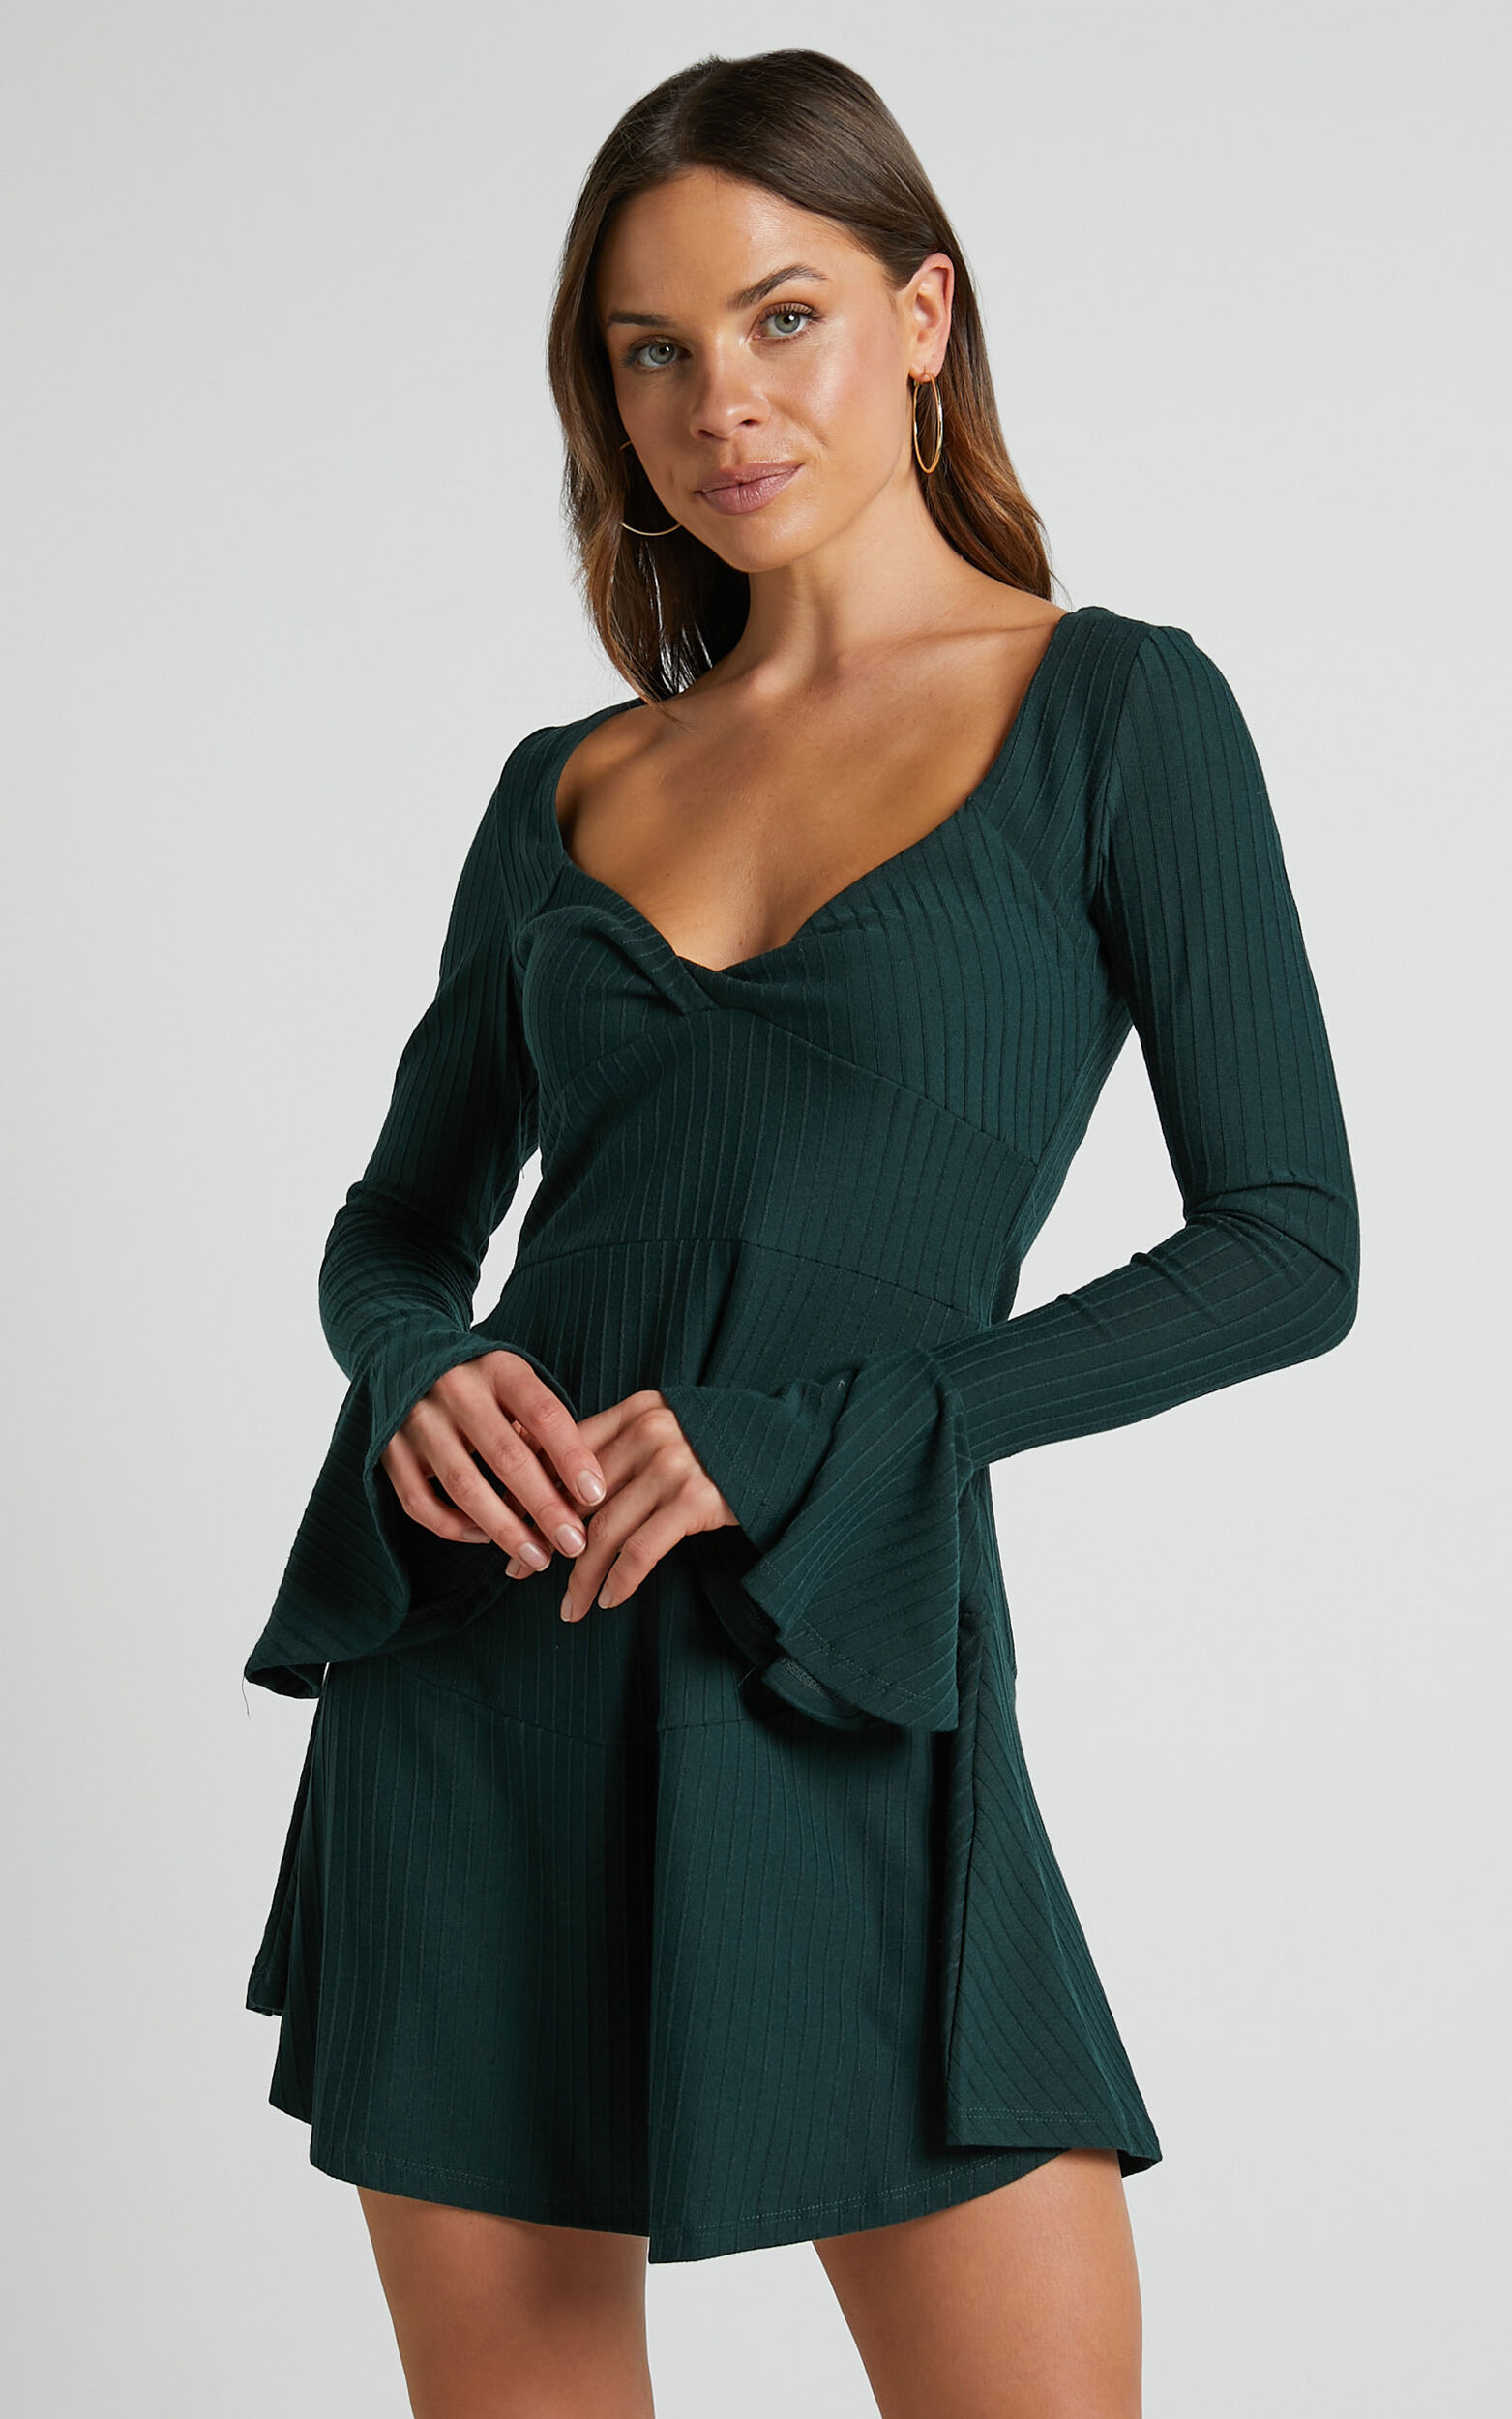 Clarine Mini Dress - Twist Front Dress in Dark Green - 06, GRN1